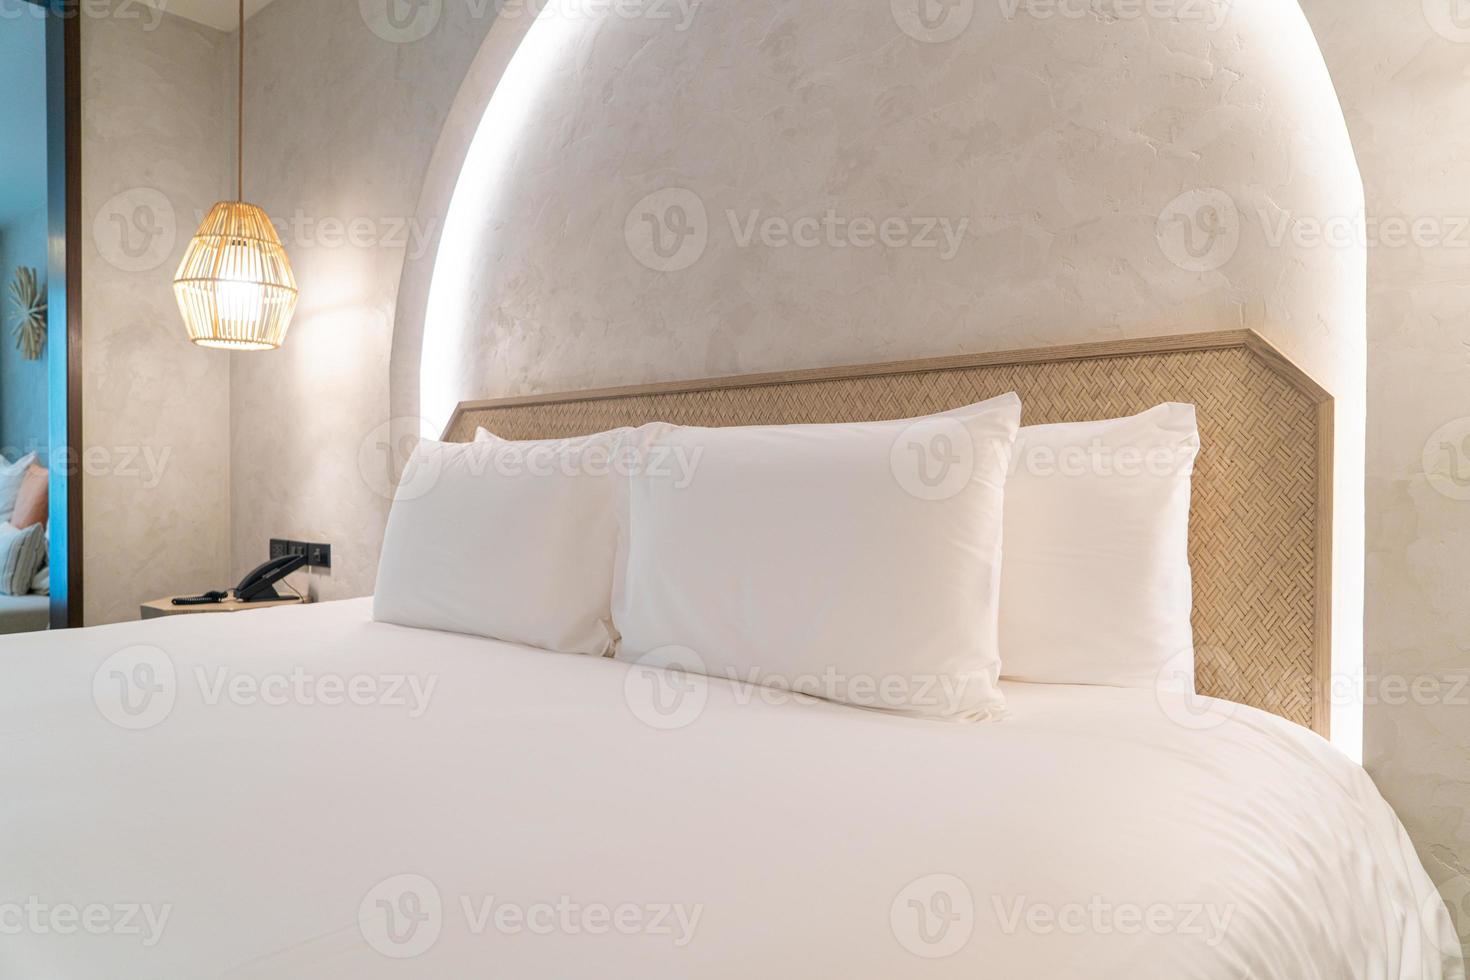 cómodas almohadas blancas en la cama foto